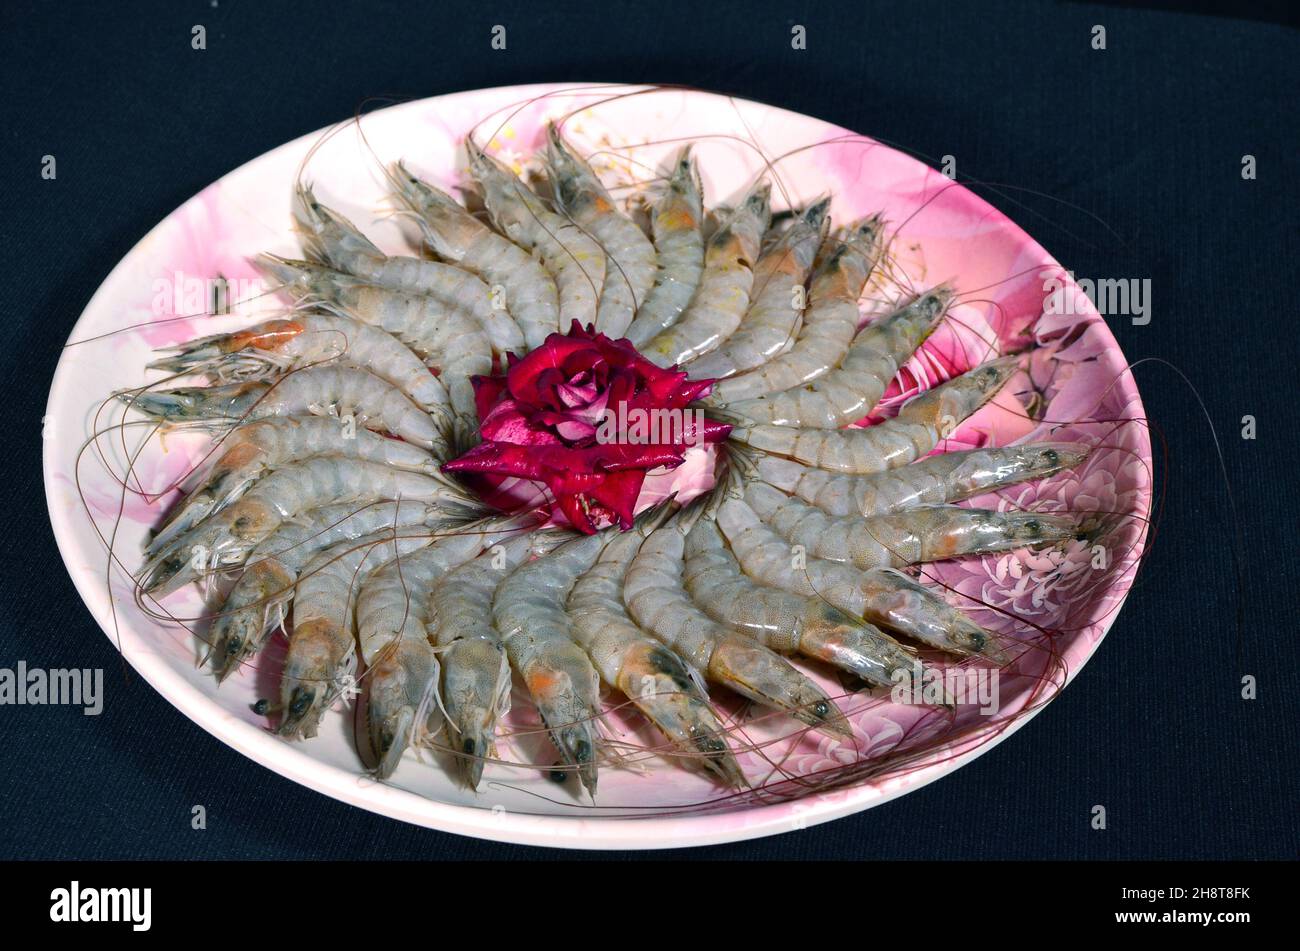 Fresh shrimp arranged on a plate Stock Photo